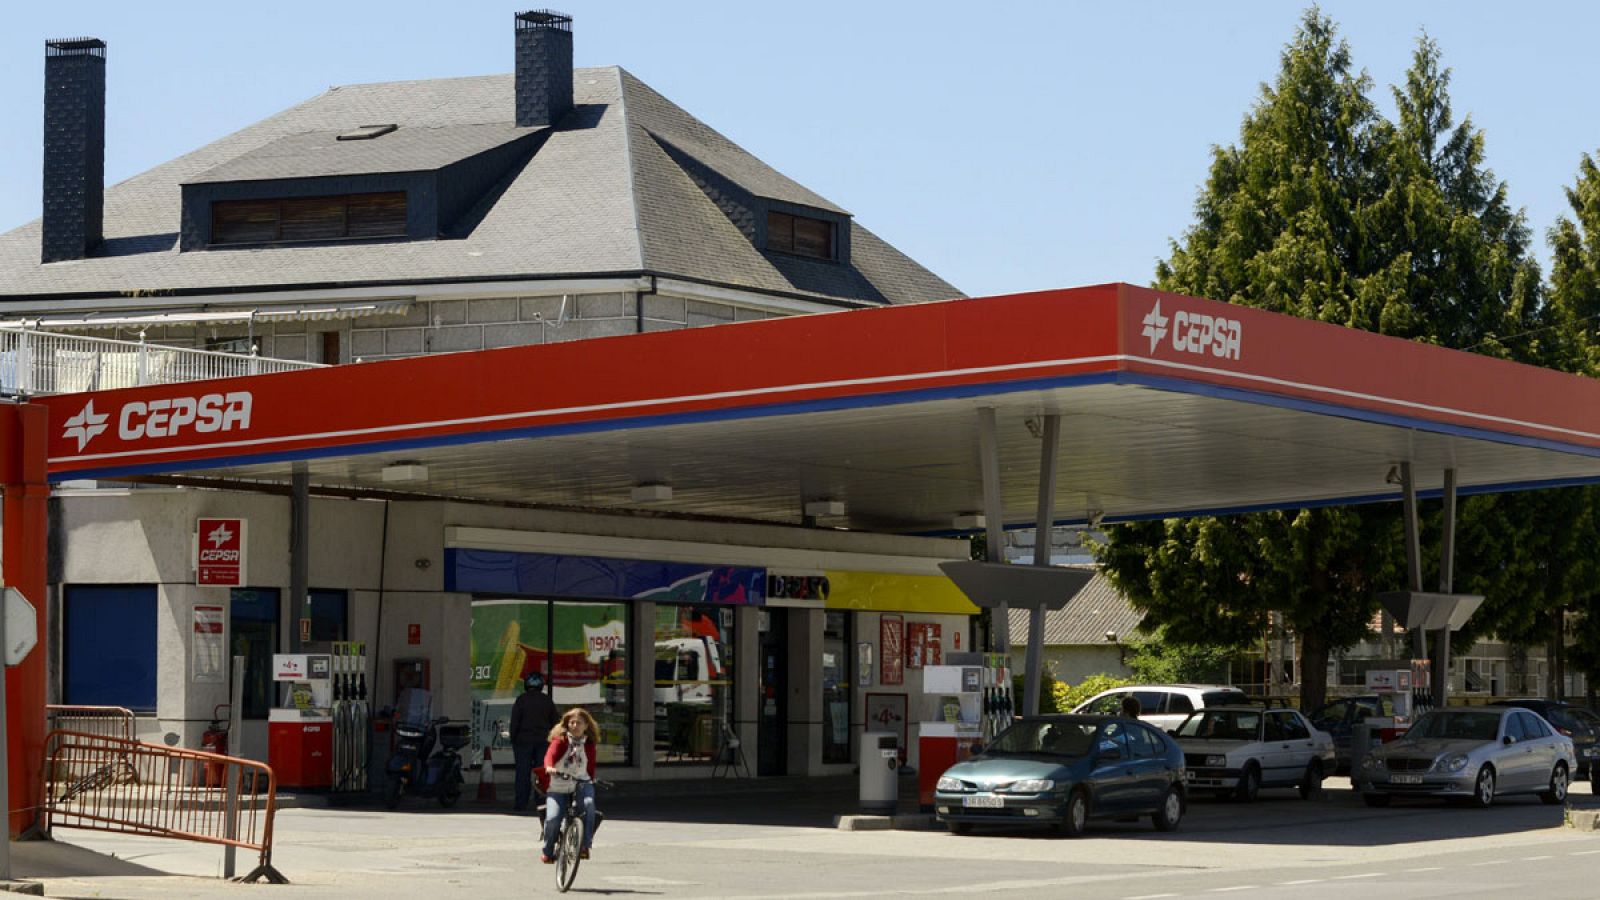 Una gasolinera de Cepsa en una imagen de archivo